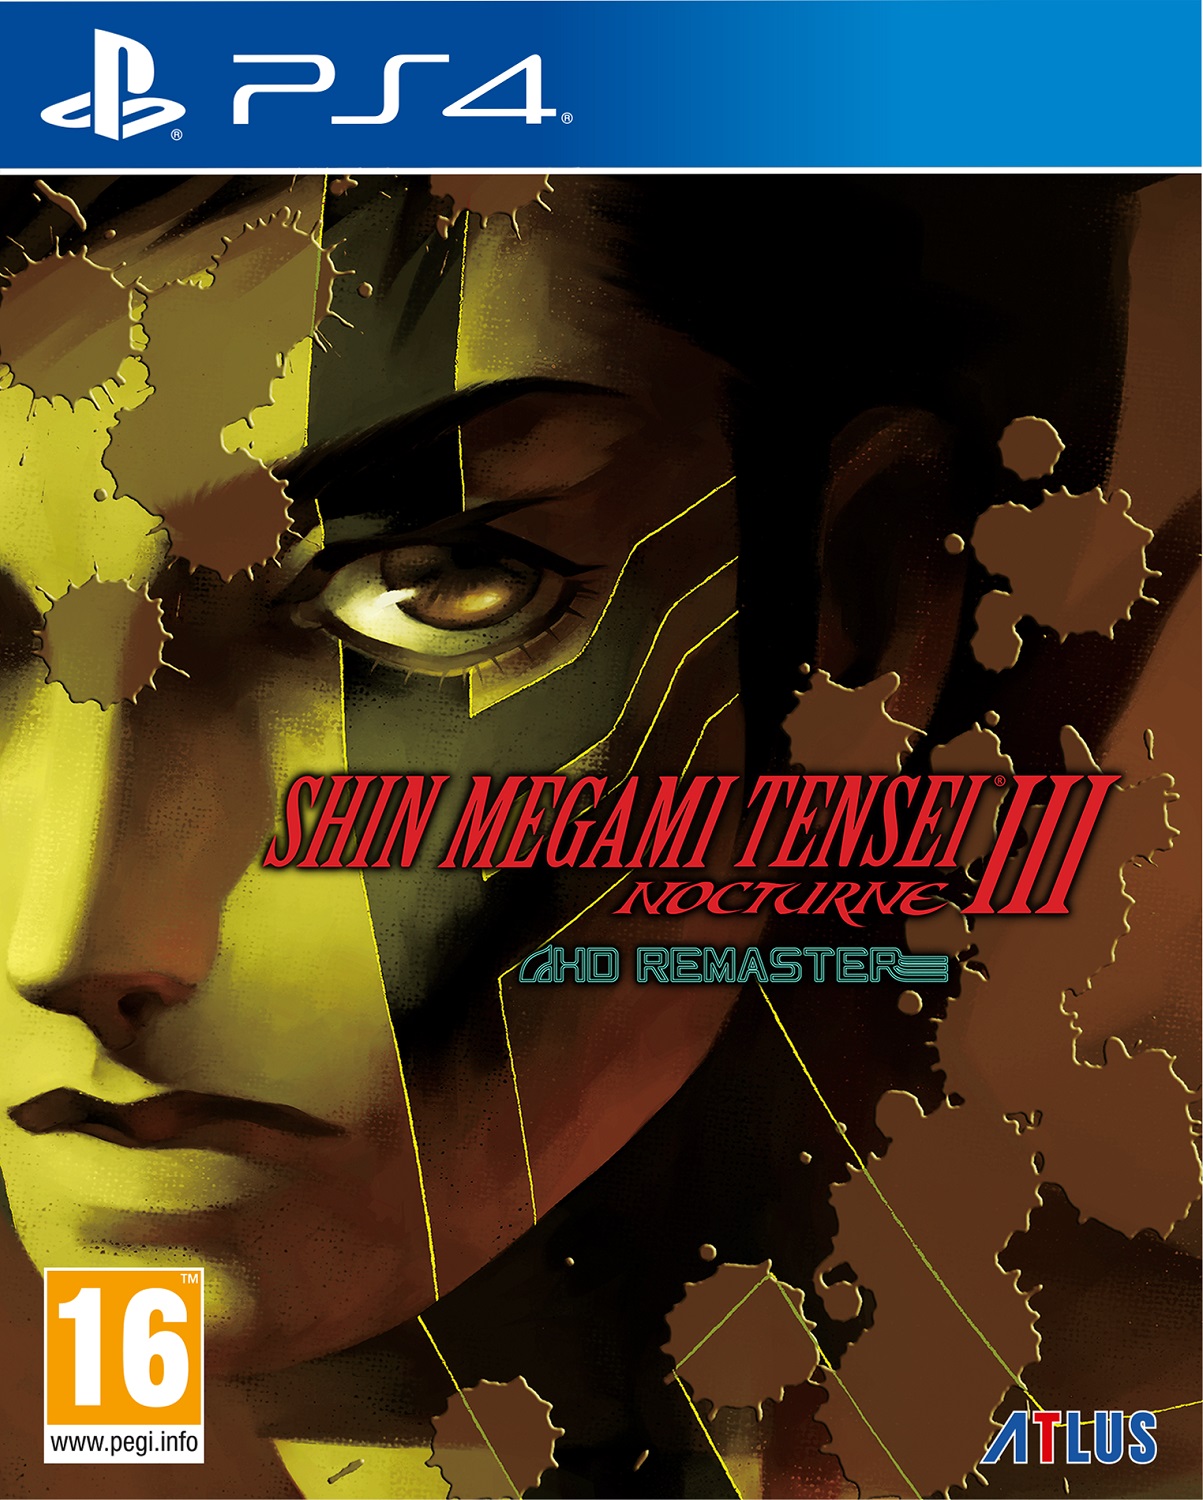 Shin Megami Tensei III Nocturne HD Remaster PS4 - SEGA 1.12.01.01.036